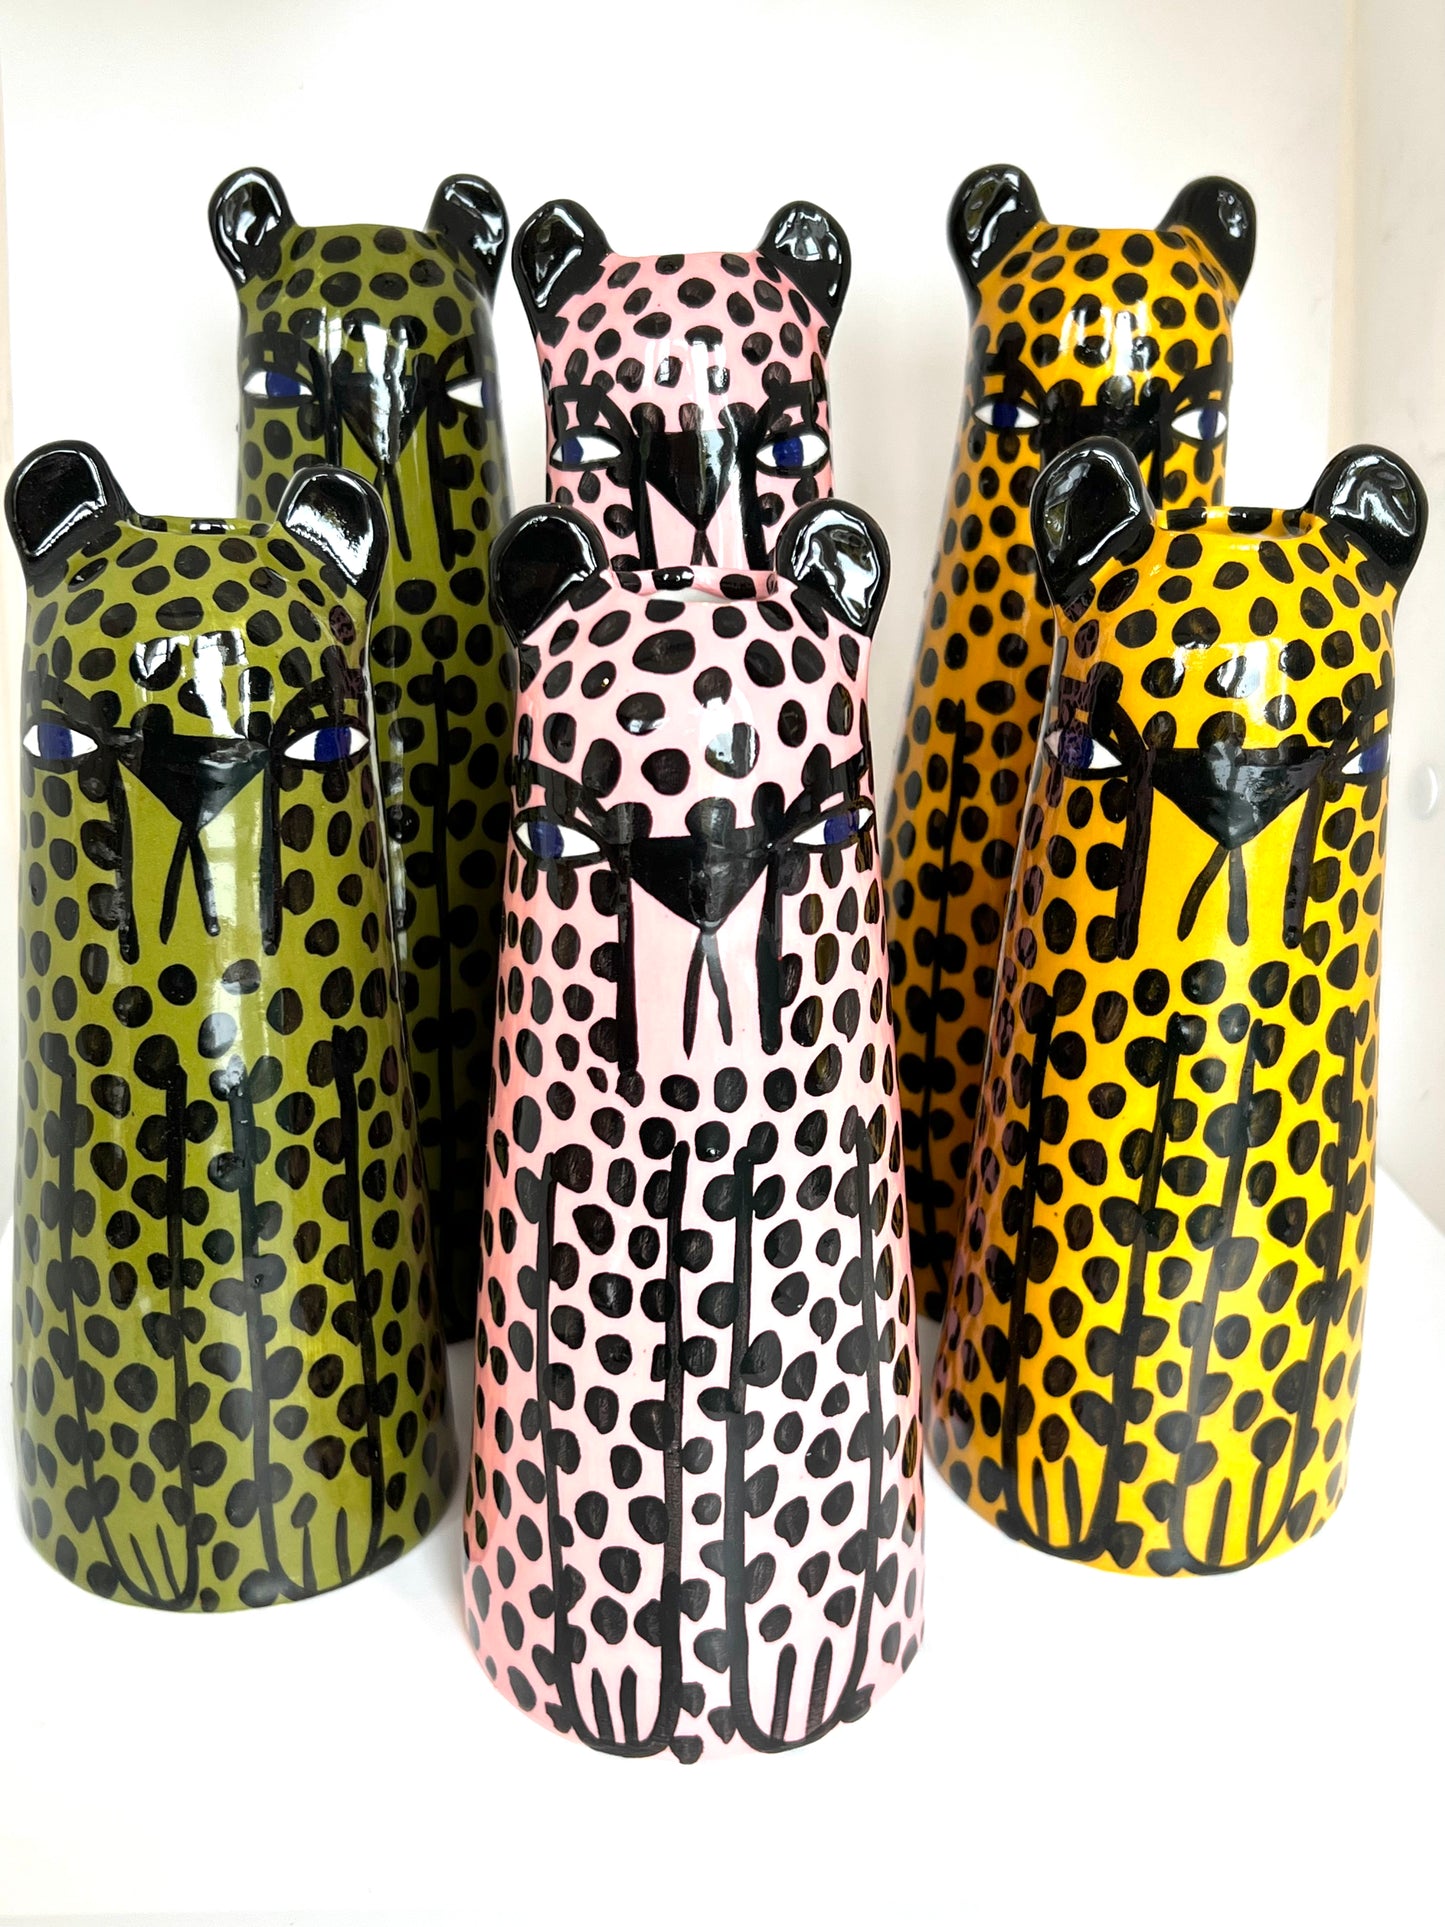 Green Cheetah Vase by Studio Soph